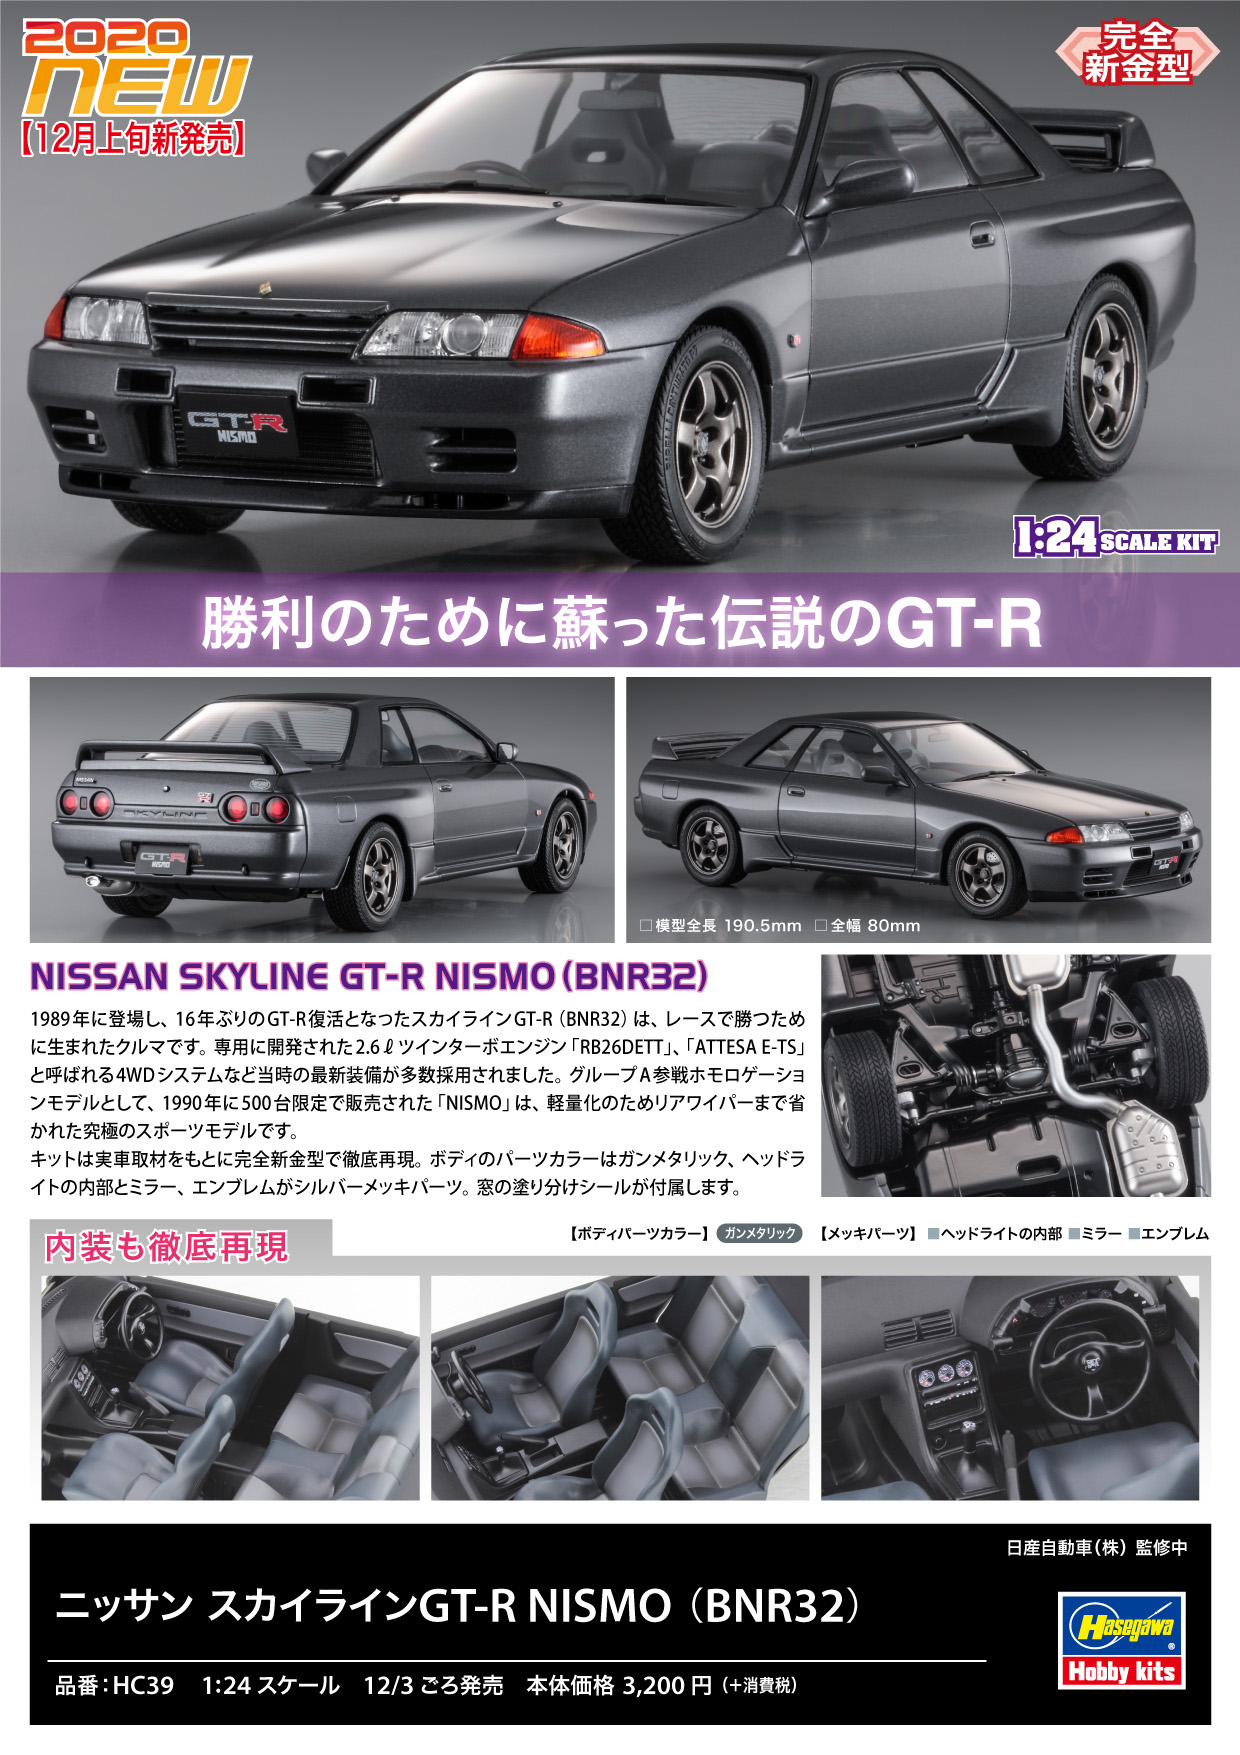 ☆大人気商品☆ りん りん日産用 R32 スカイライン GT-R ライセンス